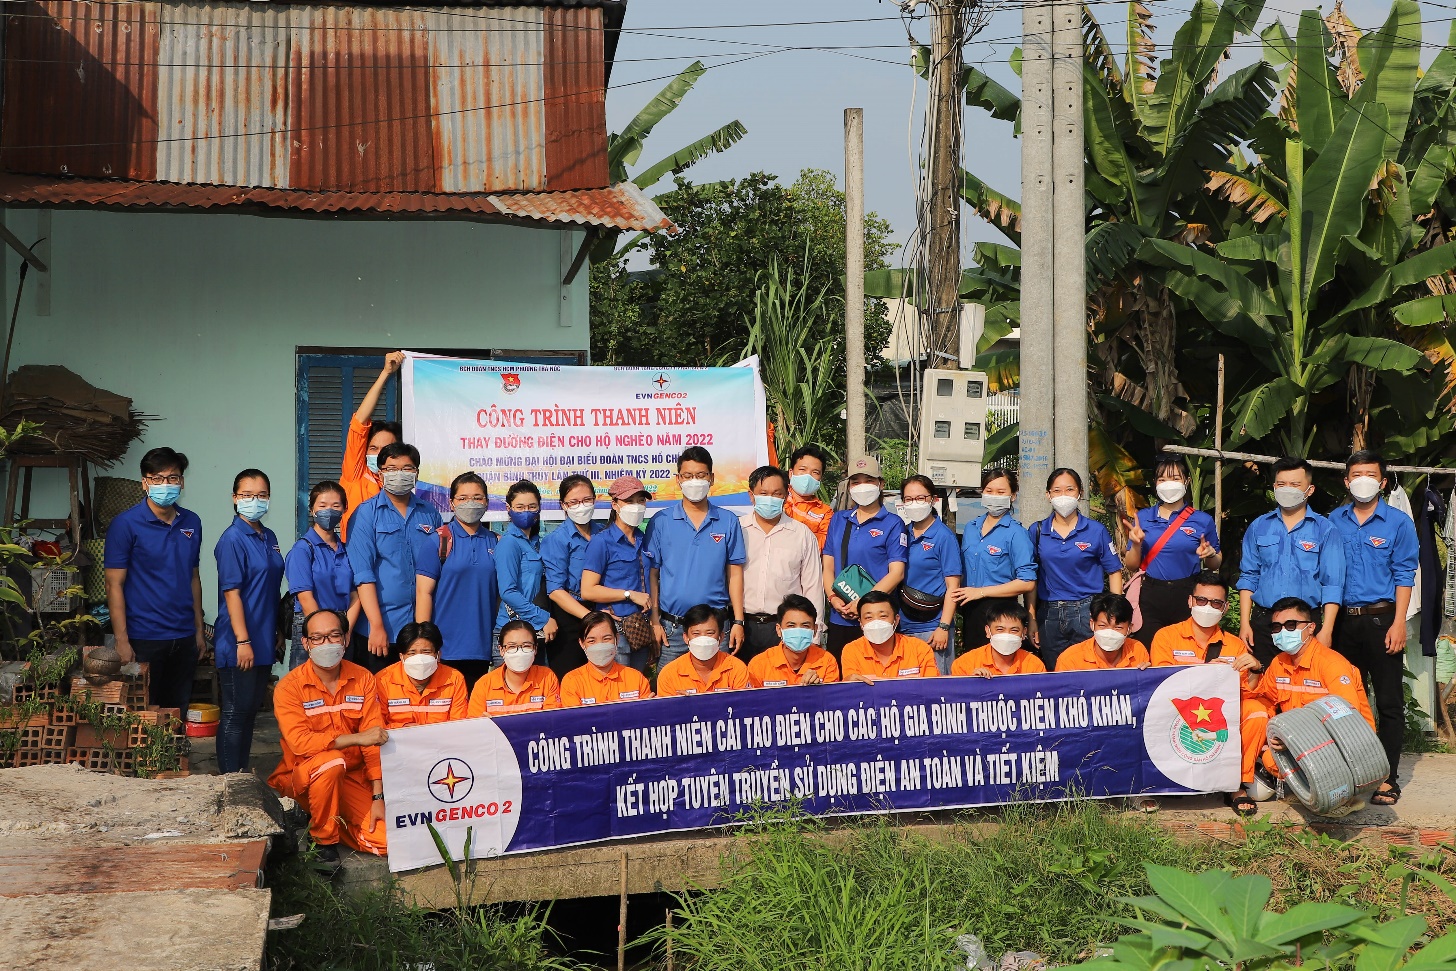 Đoàn viên Thành niên EVNGENCO2 tham gia cải tạo điện cho các hộ gia đình khó khăn.